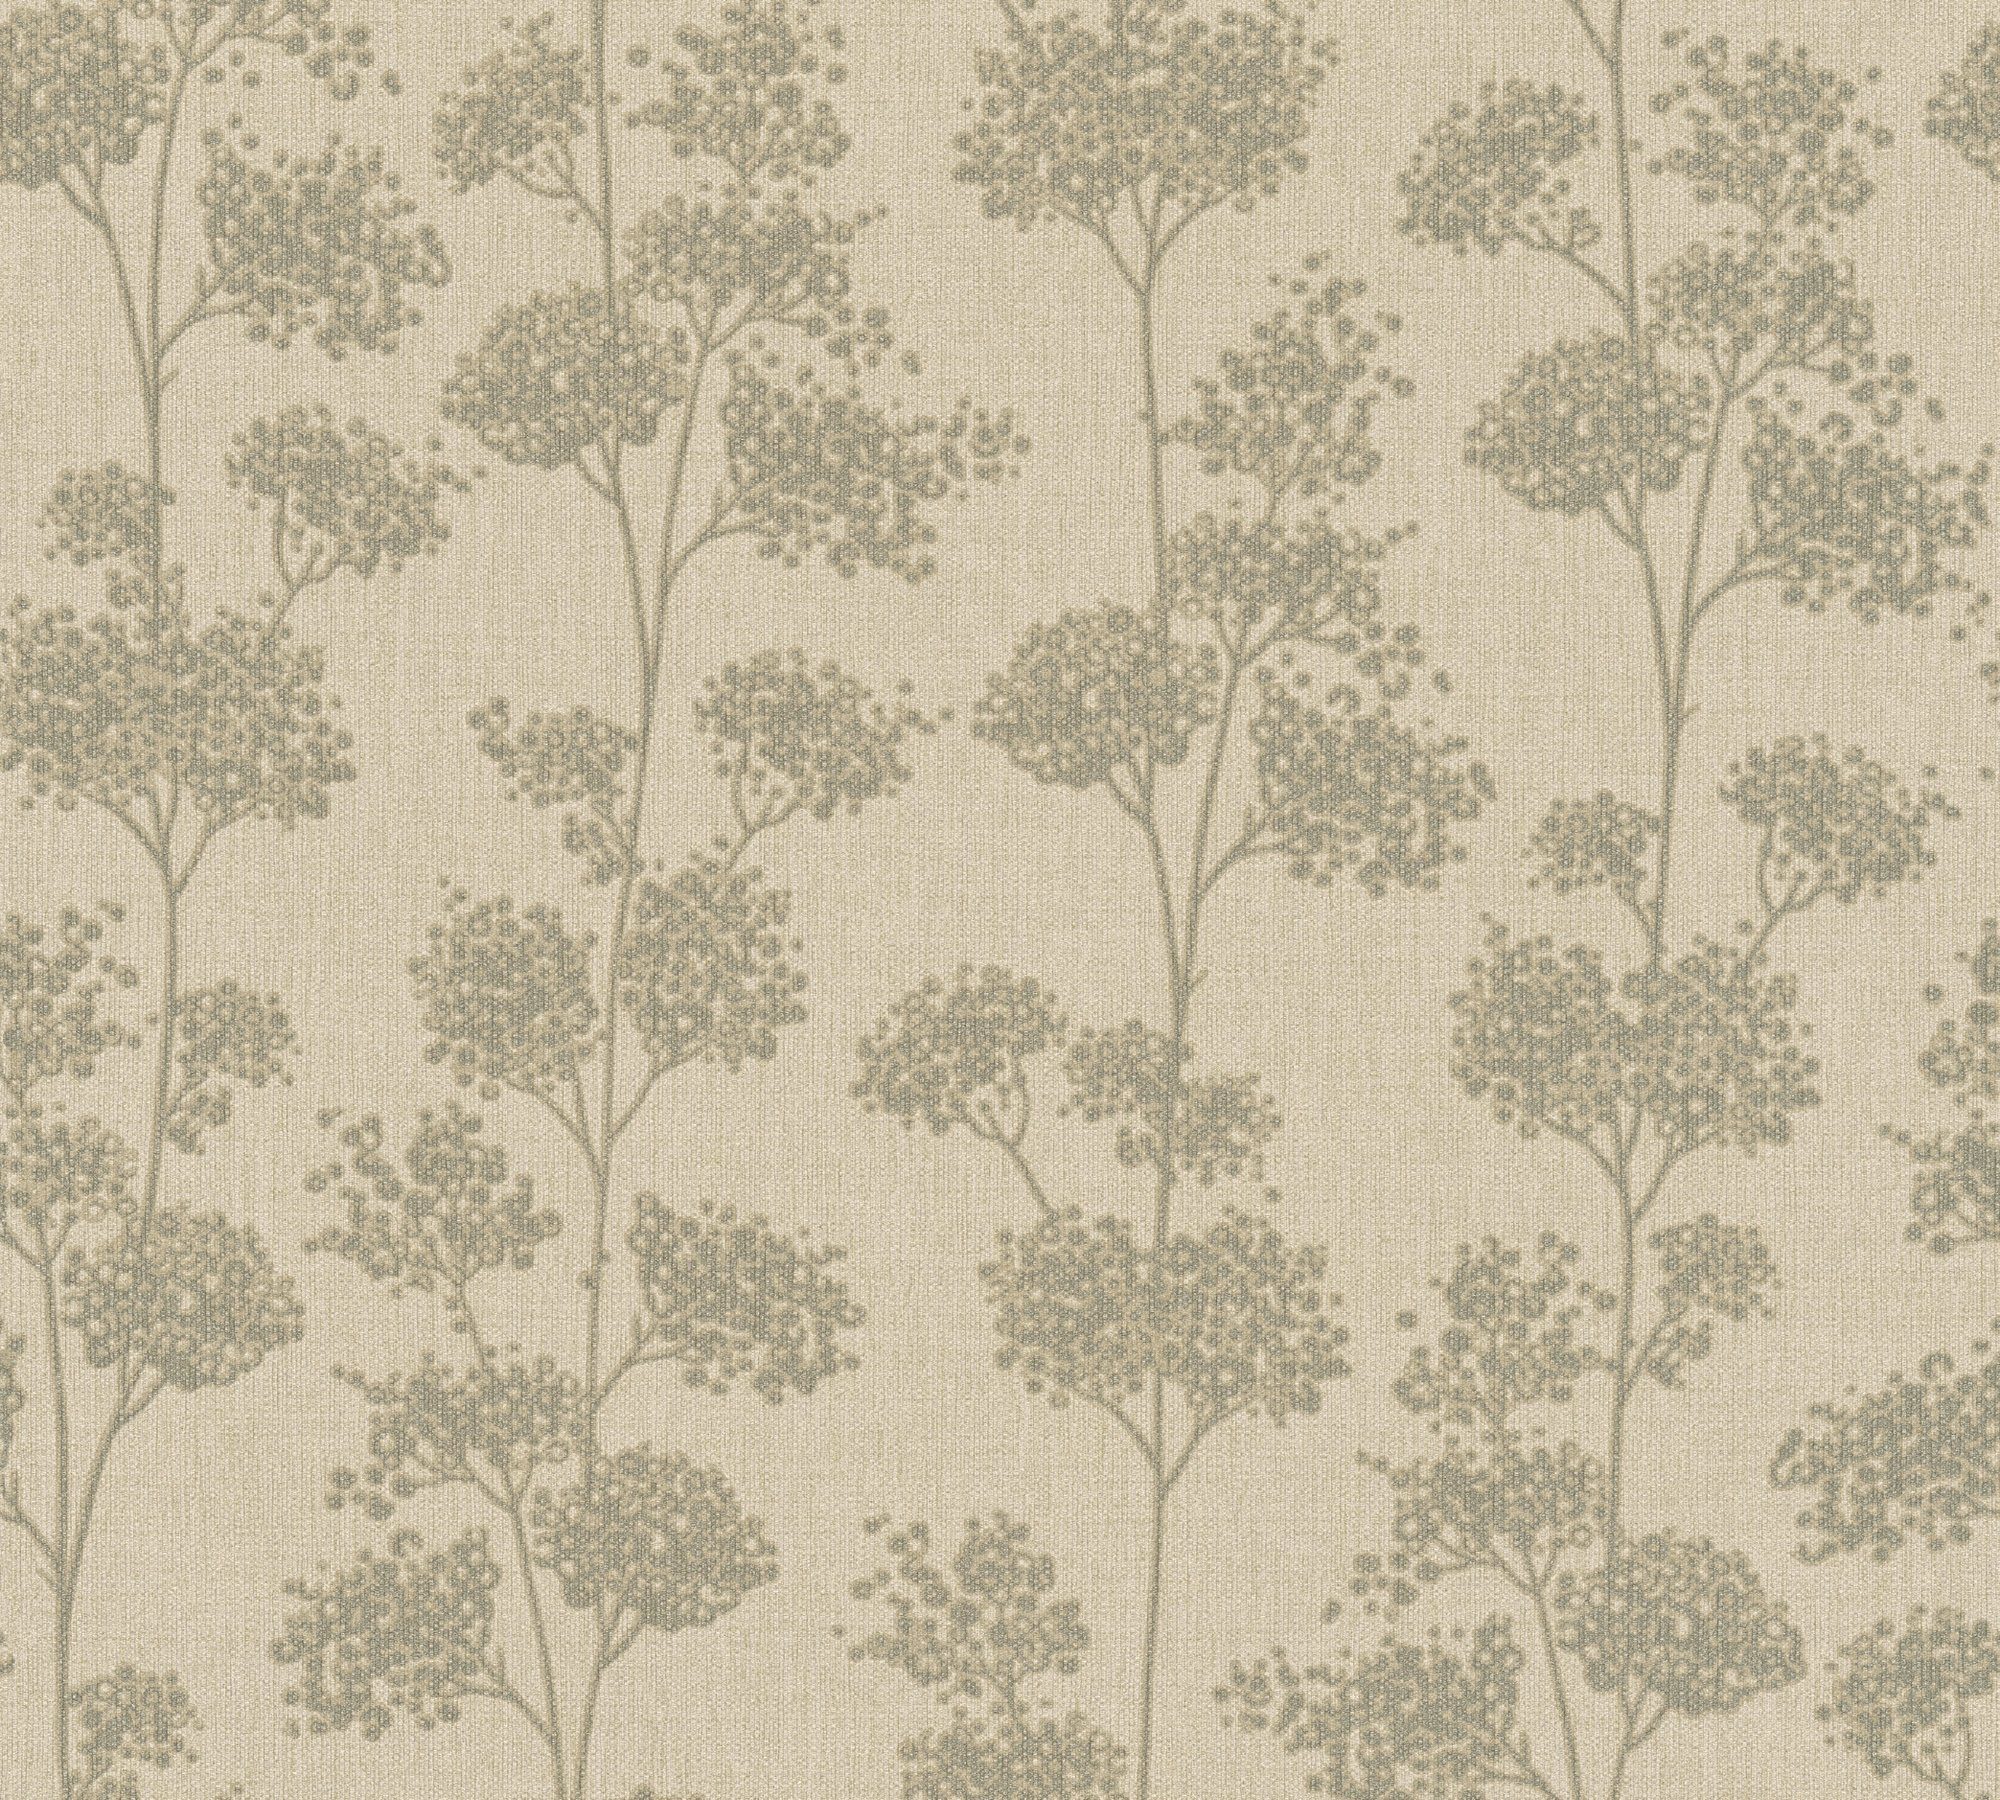 Vliestapete Tapezieren Floral, Premium A.S. Création Wall, botanisch, ohne Modern floral, möglich Tapeziertisch Tapete